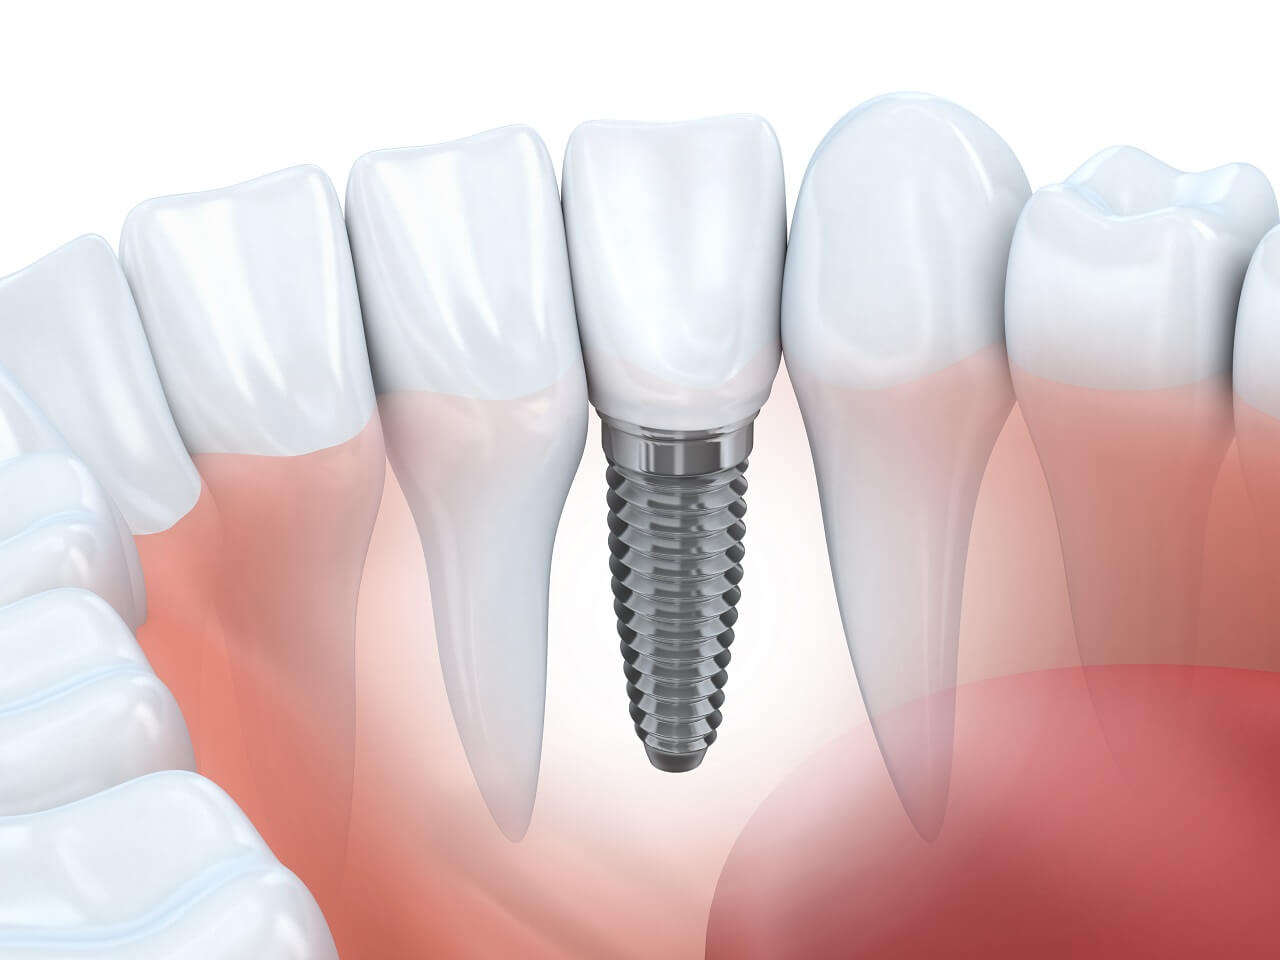 fogászati implantátum illusztráció